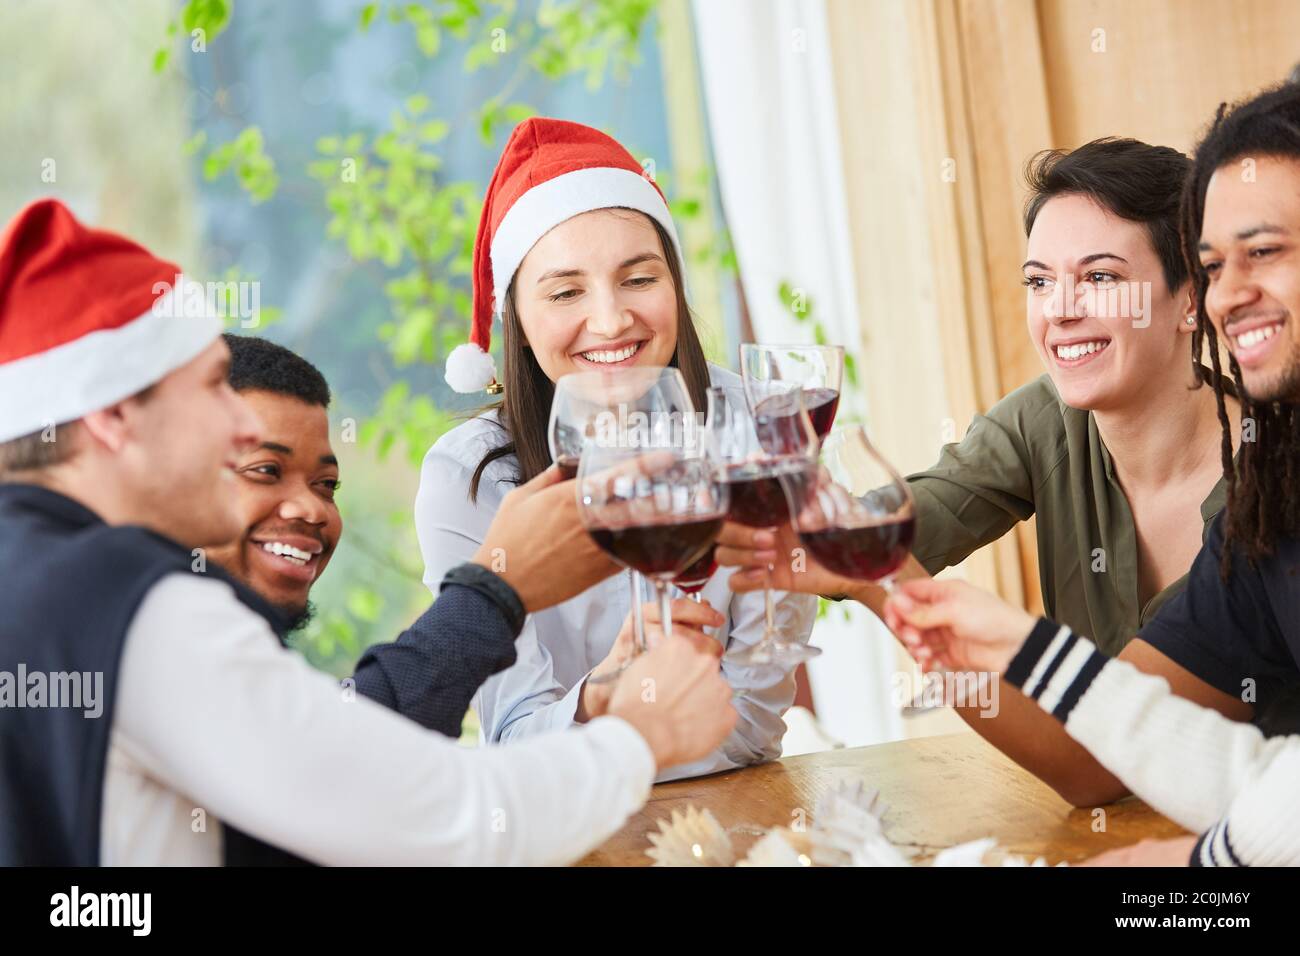 Entre Noël et Noël, les amis se sont rôrés avec un verre de vin rouge à la maison Banque D'Images